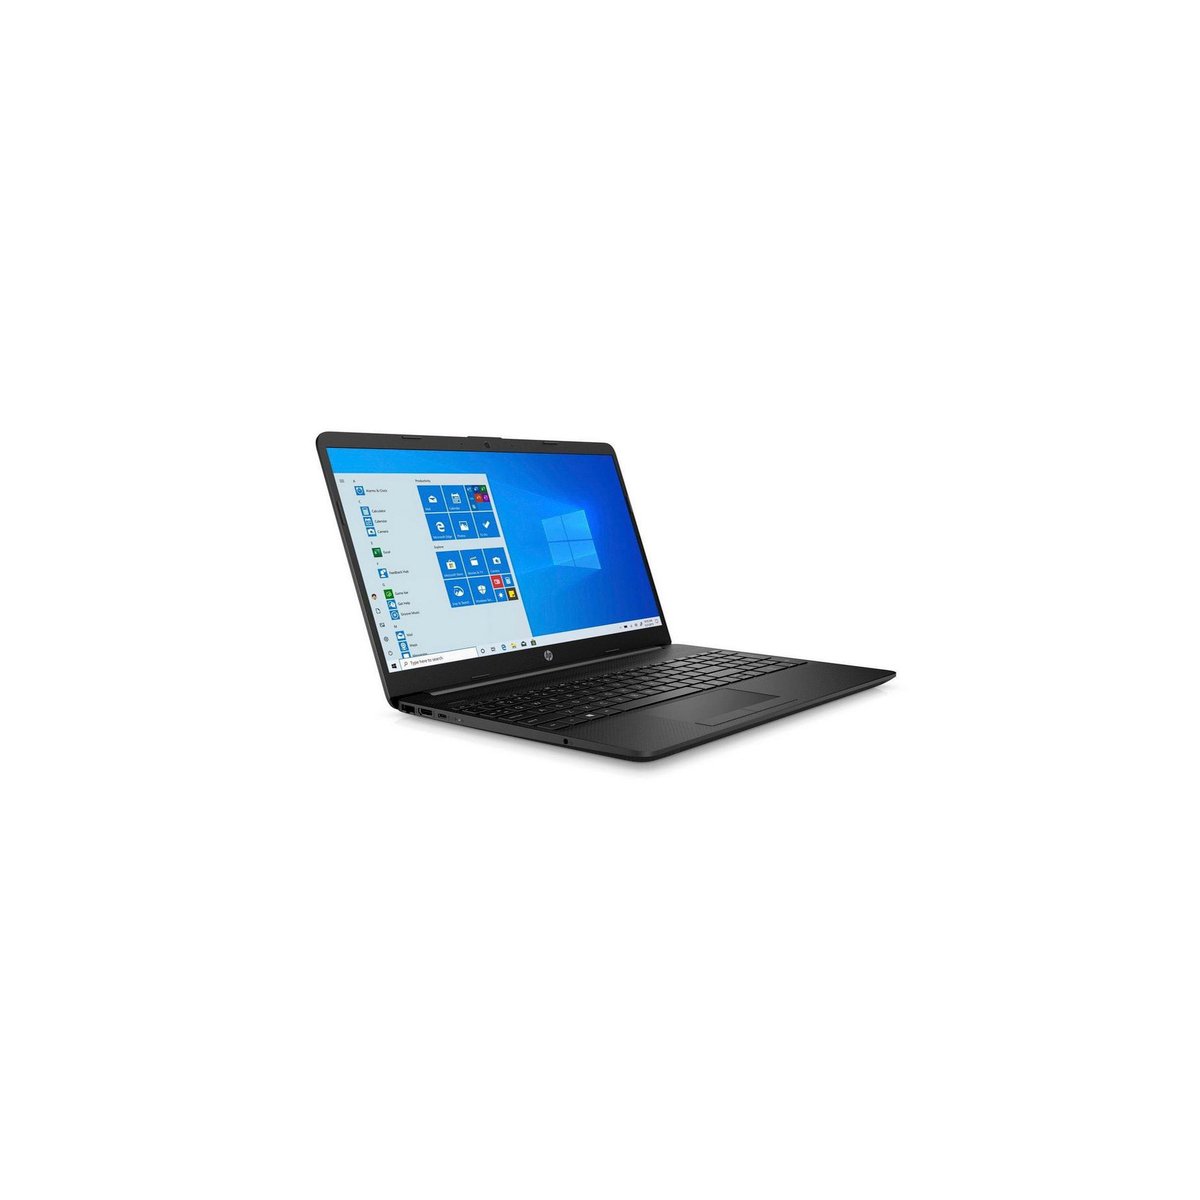 HP Laptop 15-DW3013NX, 15.6 inches, 11th Gen Intel Core i3-1115G4 Processor, 8GB RAM, 1TB HDD, NVIDIA GeForce MX350, Jet Black